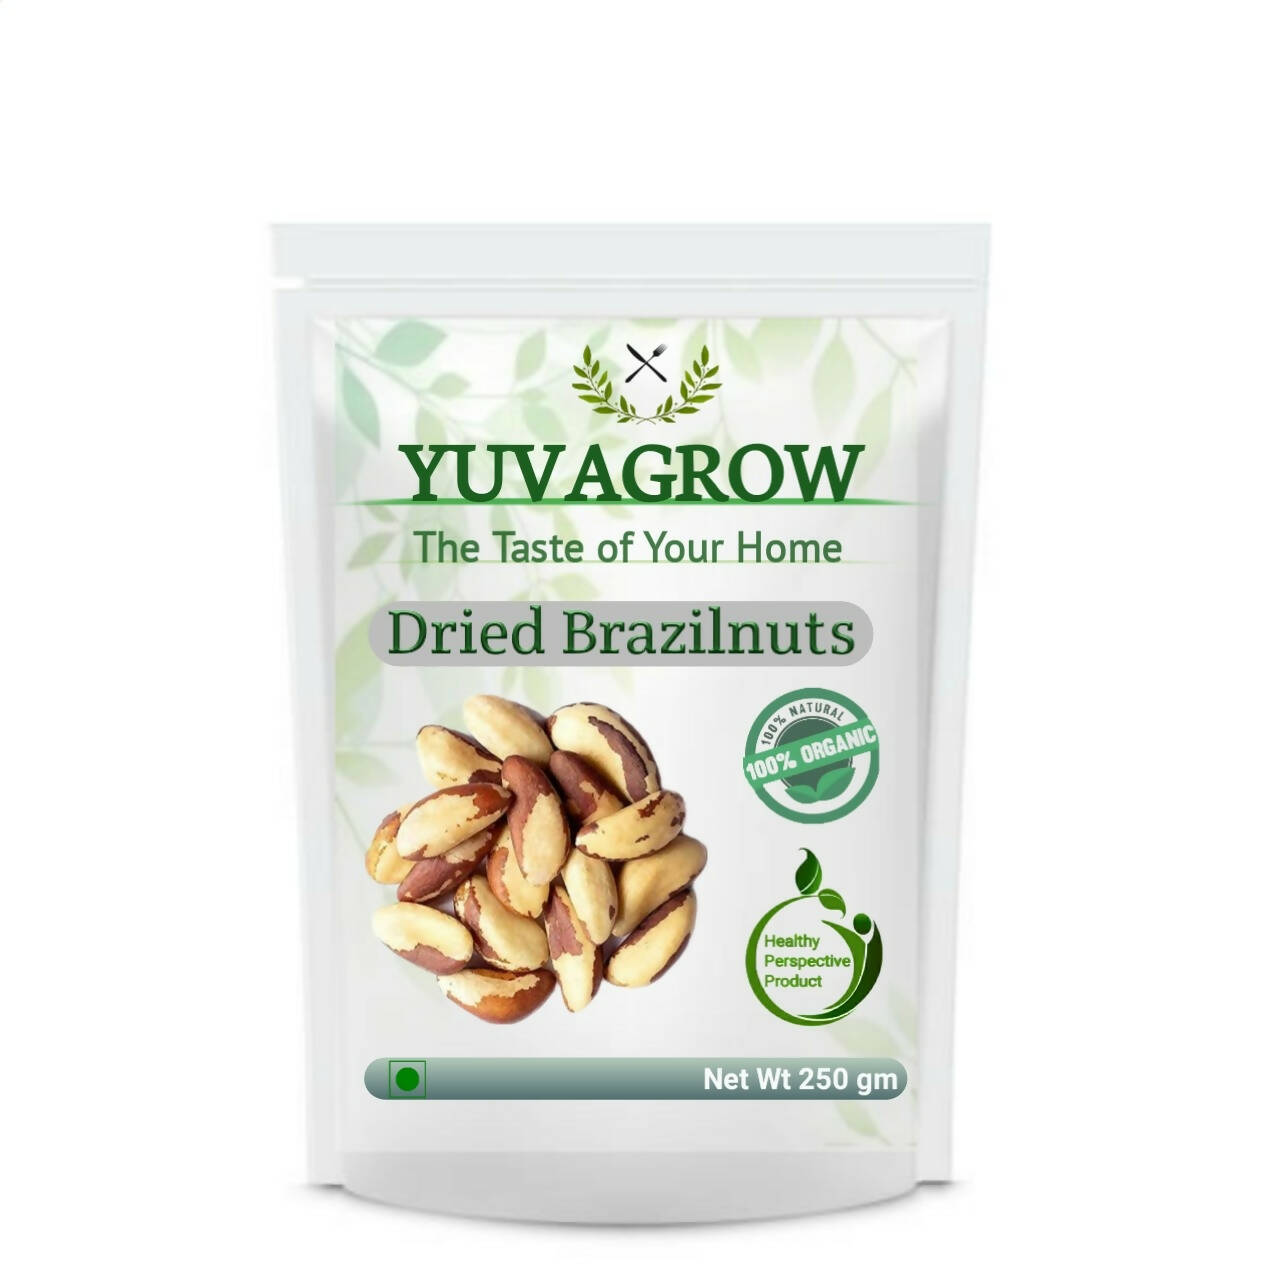 Yuvagrow Dried Brazilnuts - buy in USA, Australia, Canada